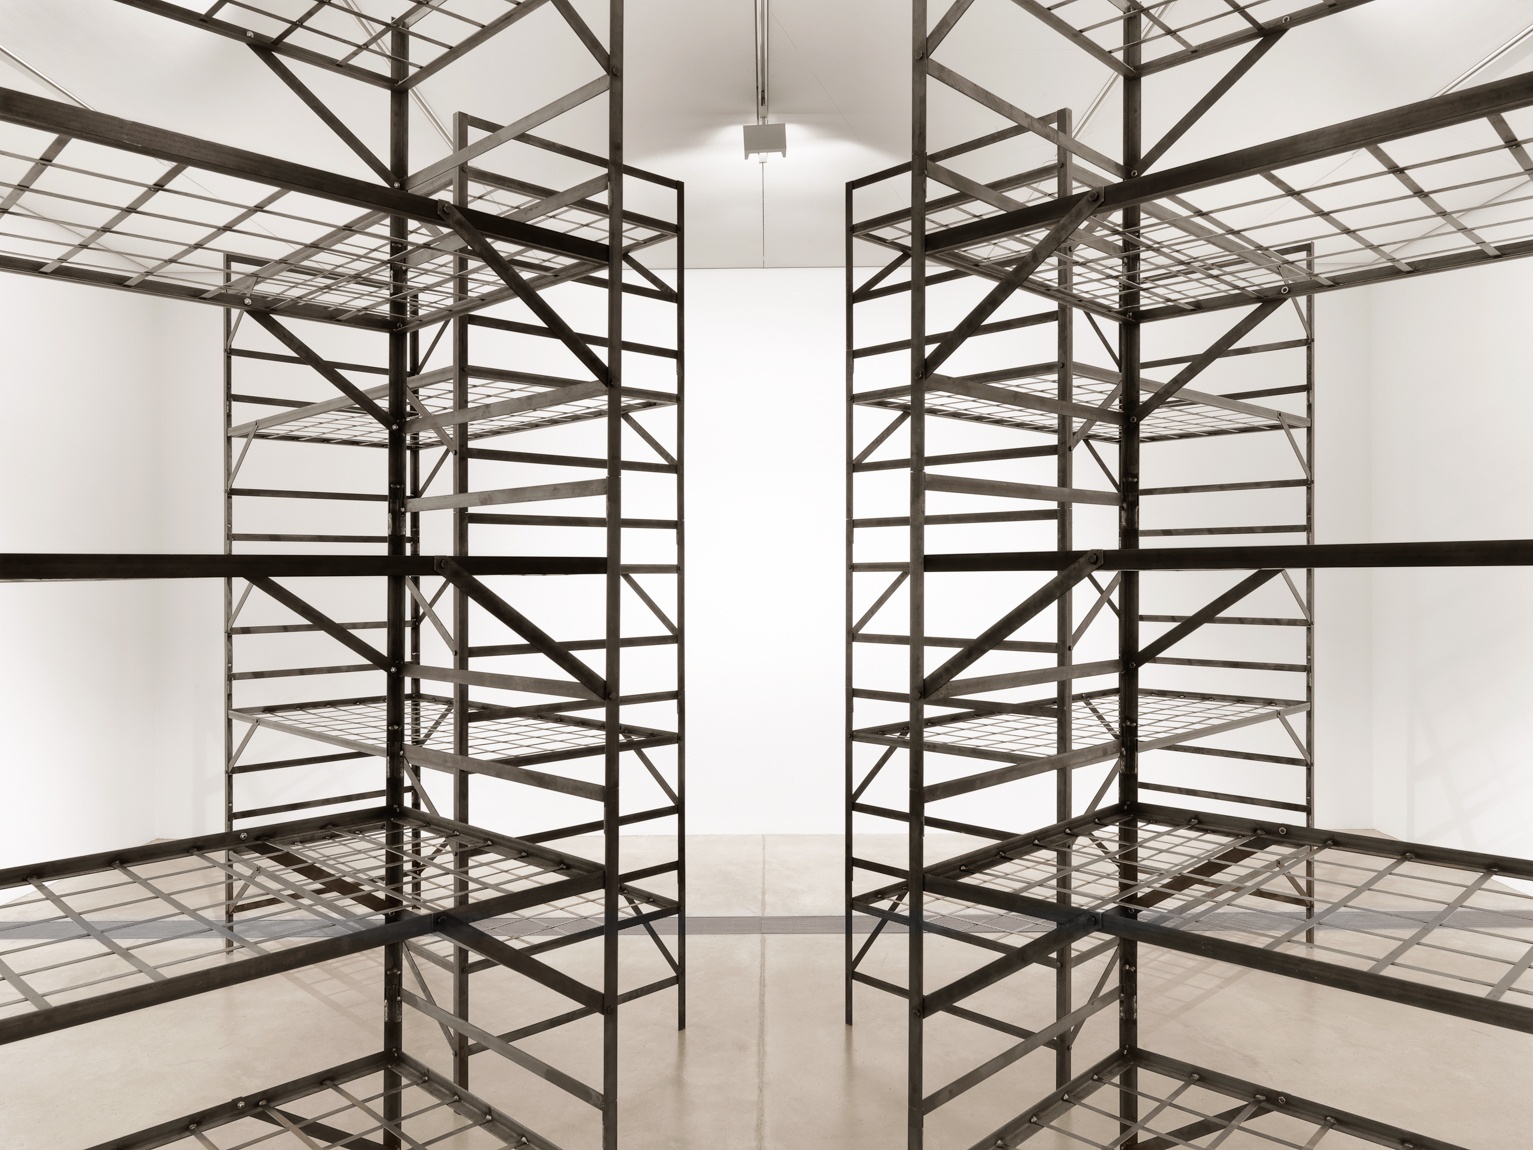 Mona Hatoum's steel installation 